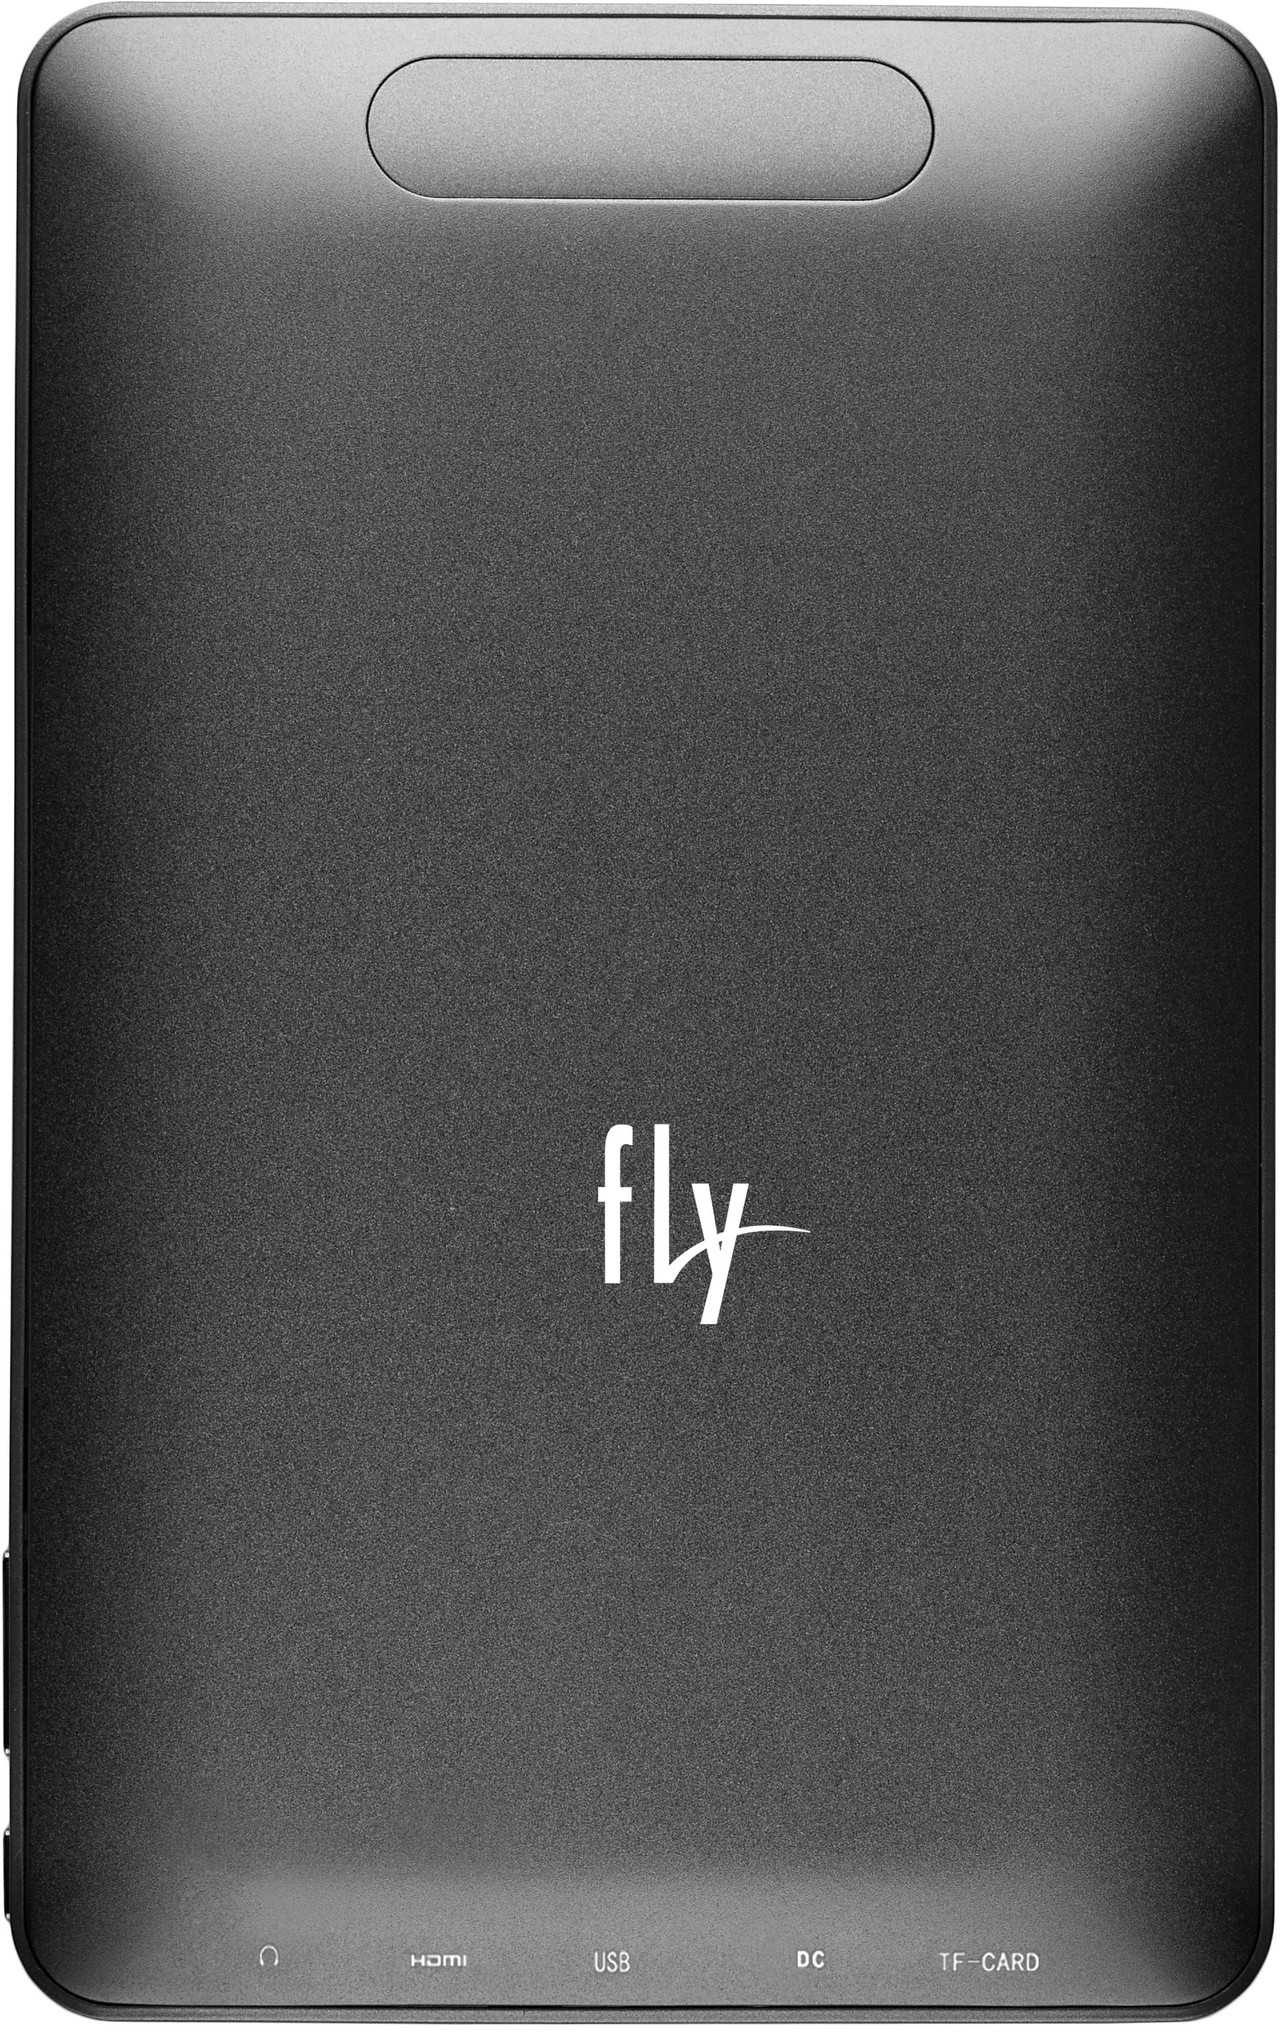 Fly iq310 panorama - купить , скидки, цена, отзывы, обзор, характеристики - планшеты